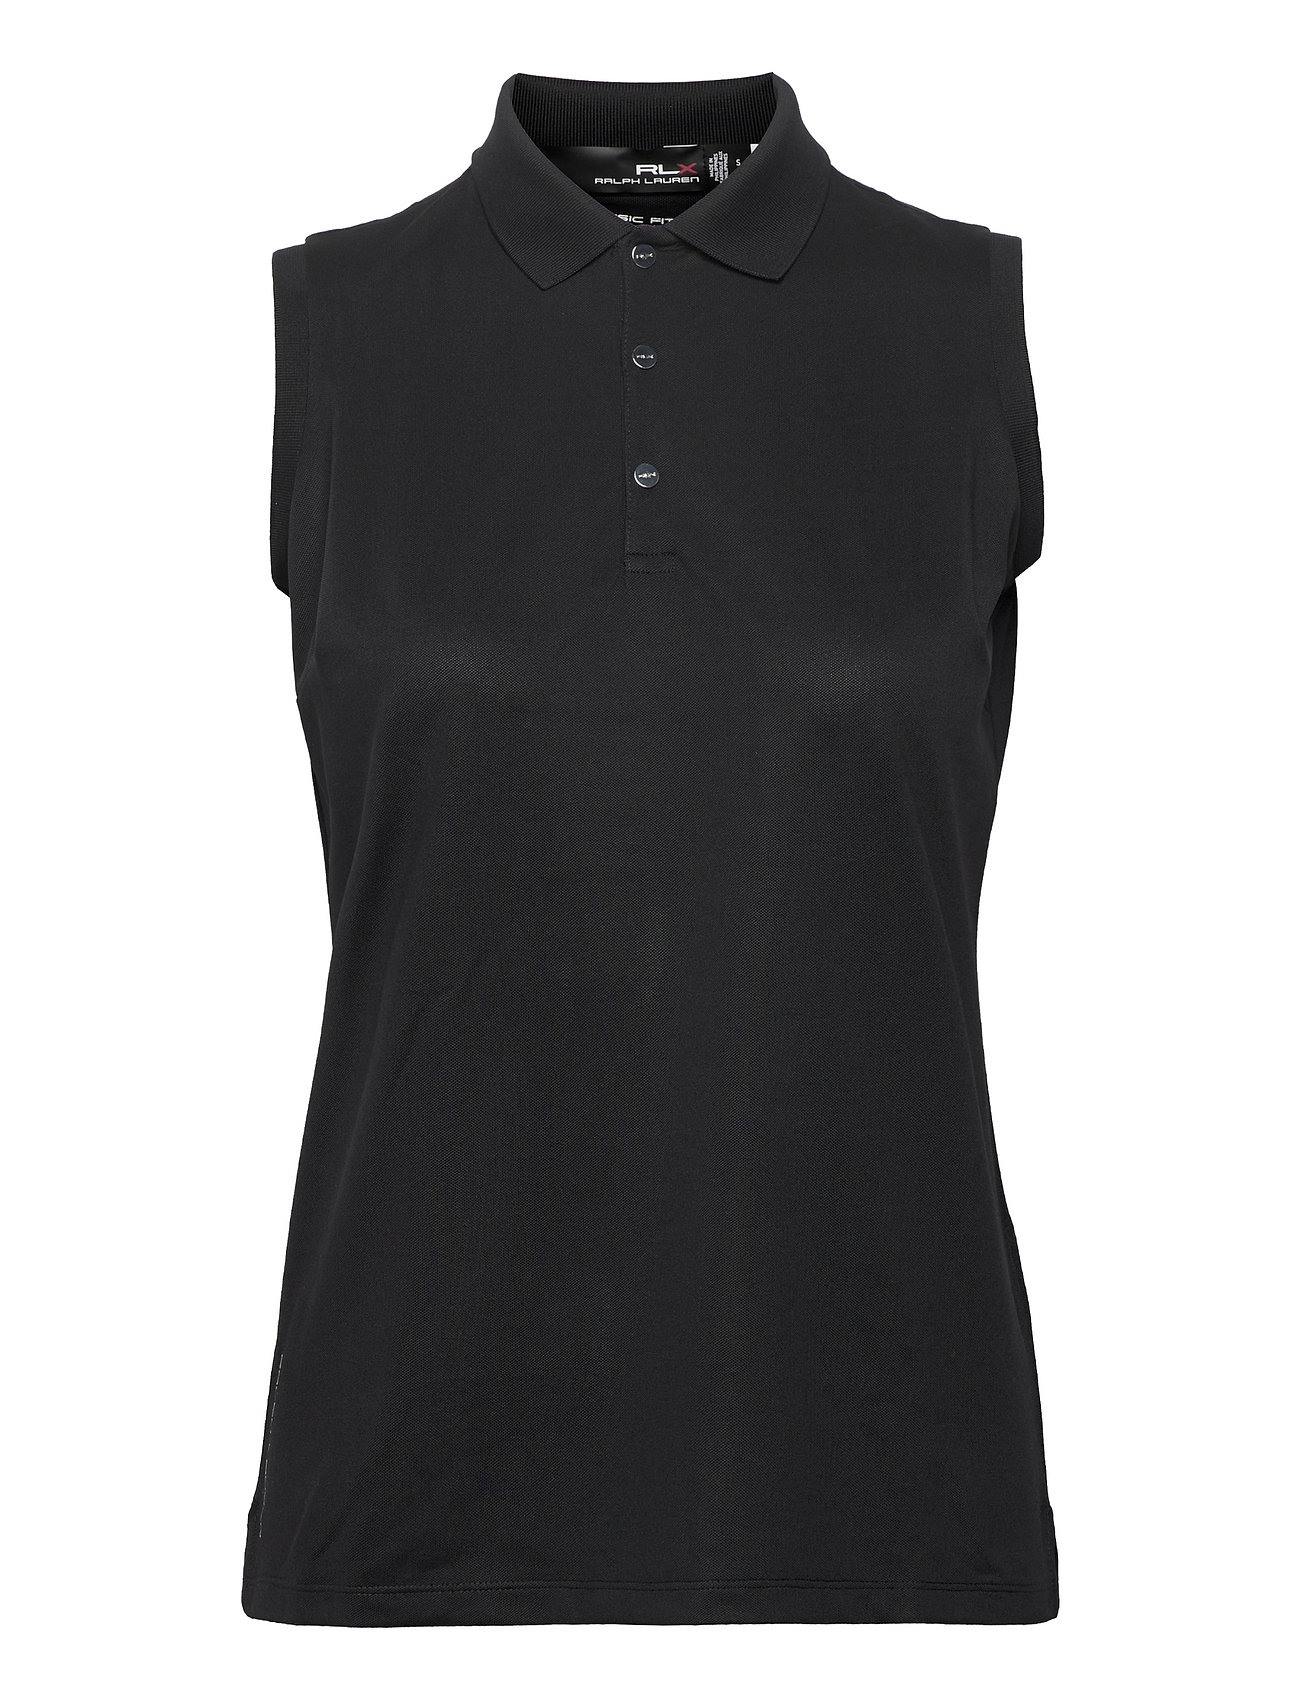 Sleeveless Piqué Polo Shirt Sport T-shirts & Tops Polos Black Ralph Lauren Golf